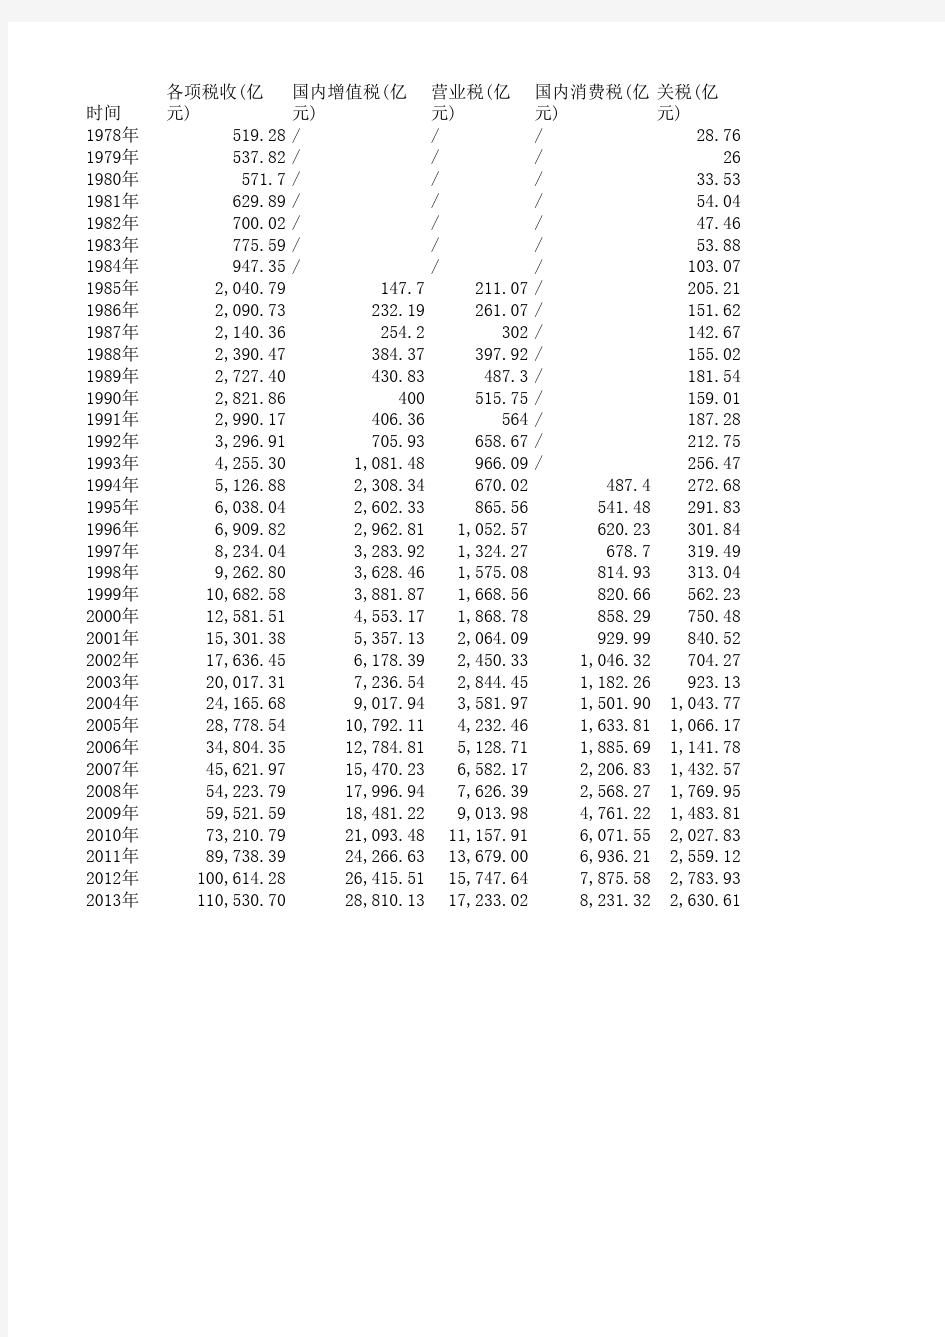 1978-2013年中国主要税收数据统计